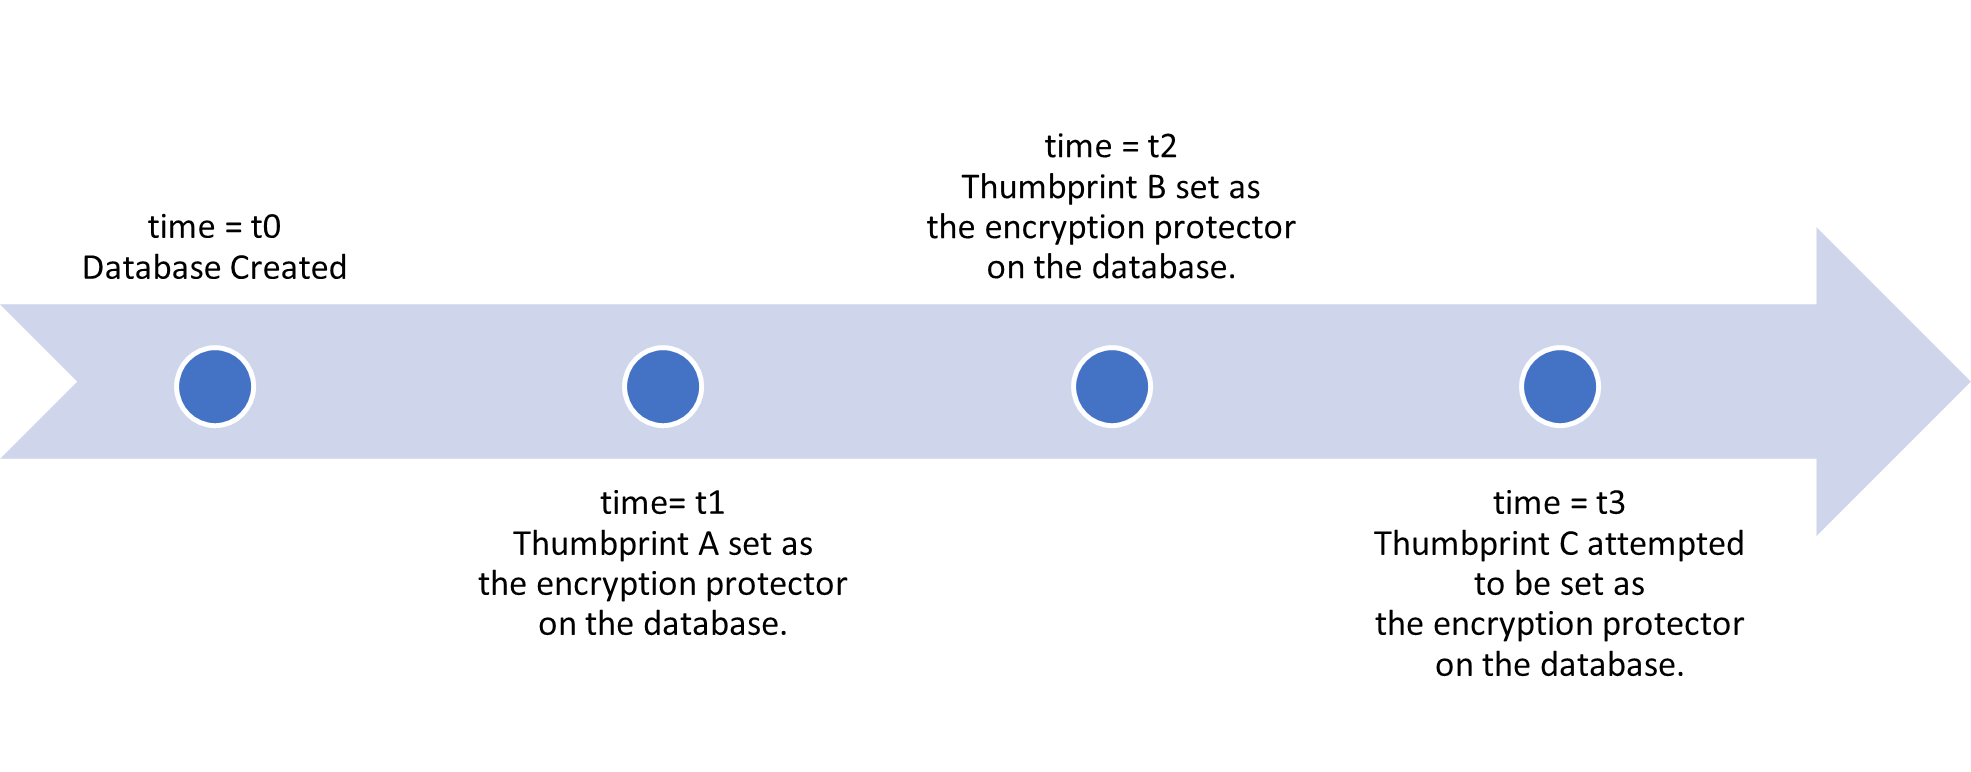 使用資料庫層級客戶自控的金鑰所設定資料庫的金鑰輪替範例時間軸。